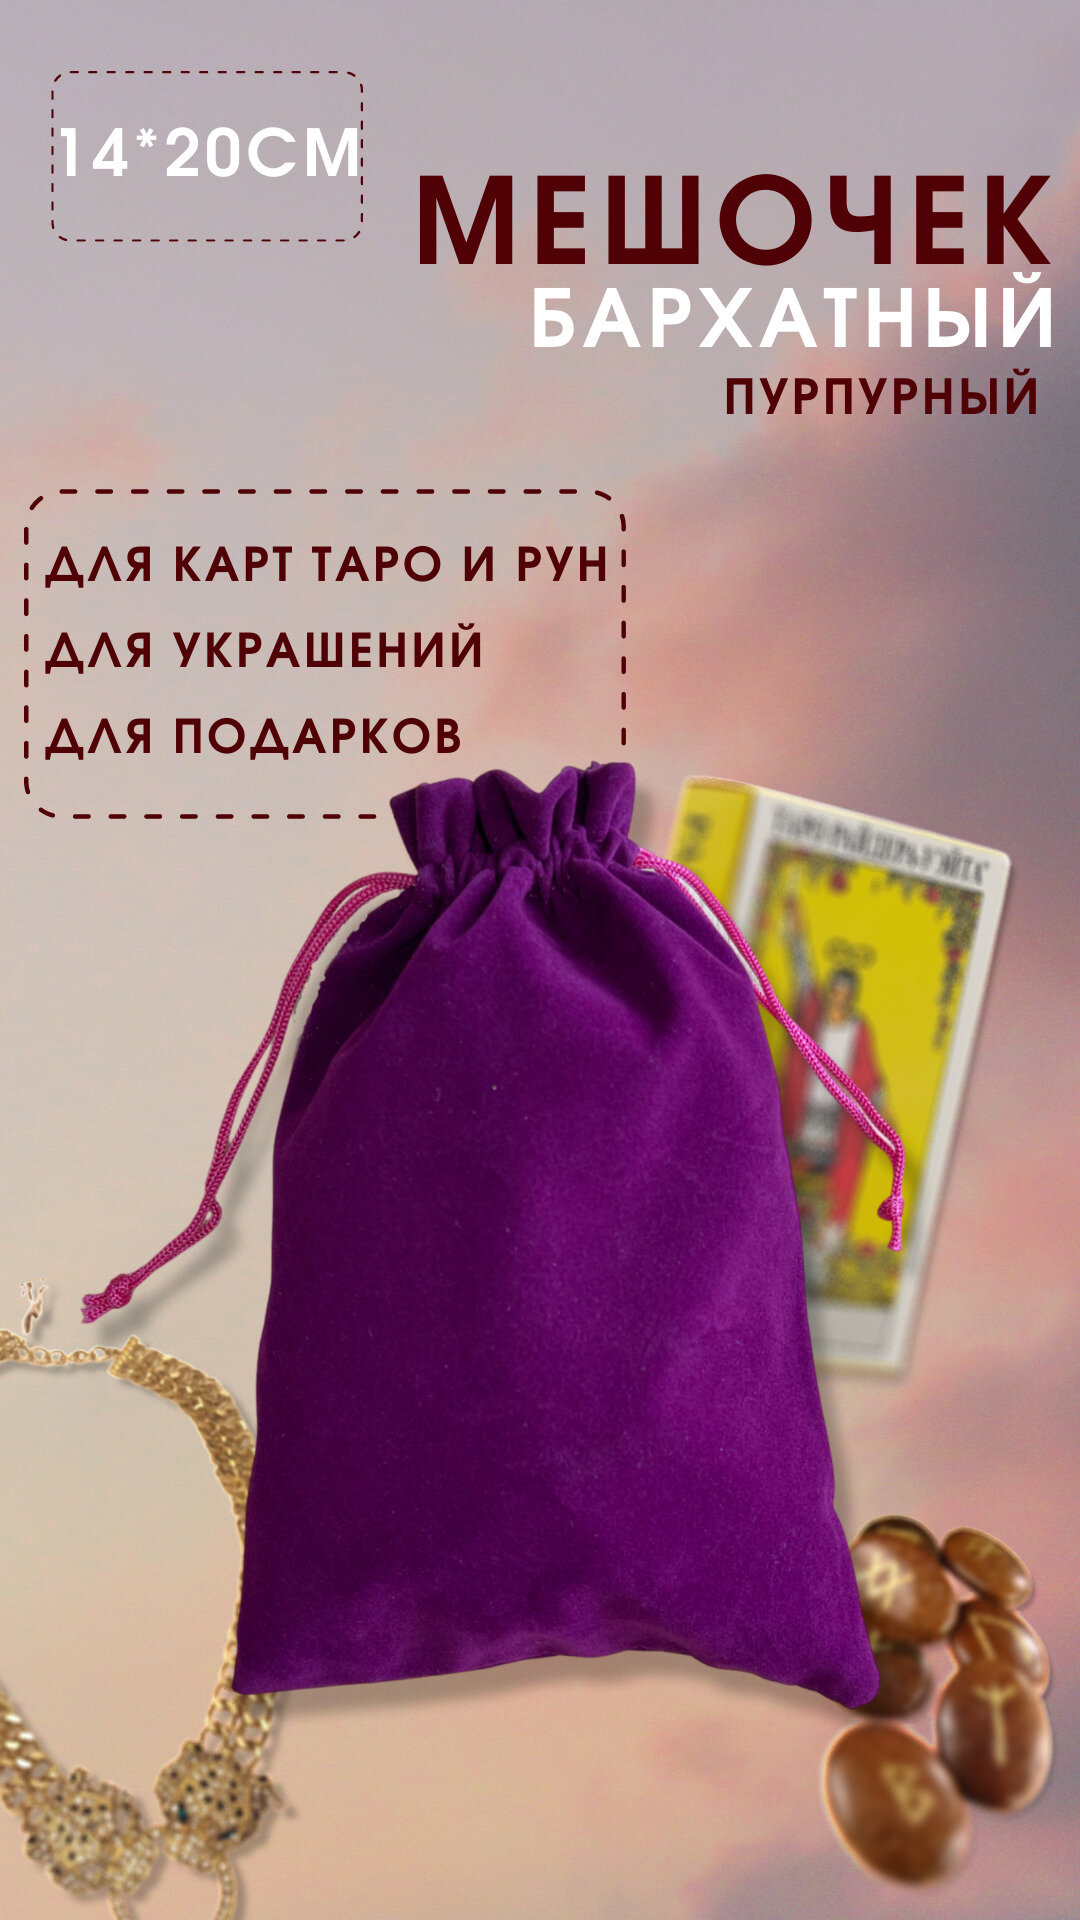 Мешочек для хранения карт Таро 14х20 см / Мешочек подарочный для украшений пурпурный